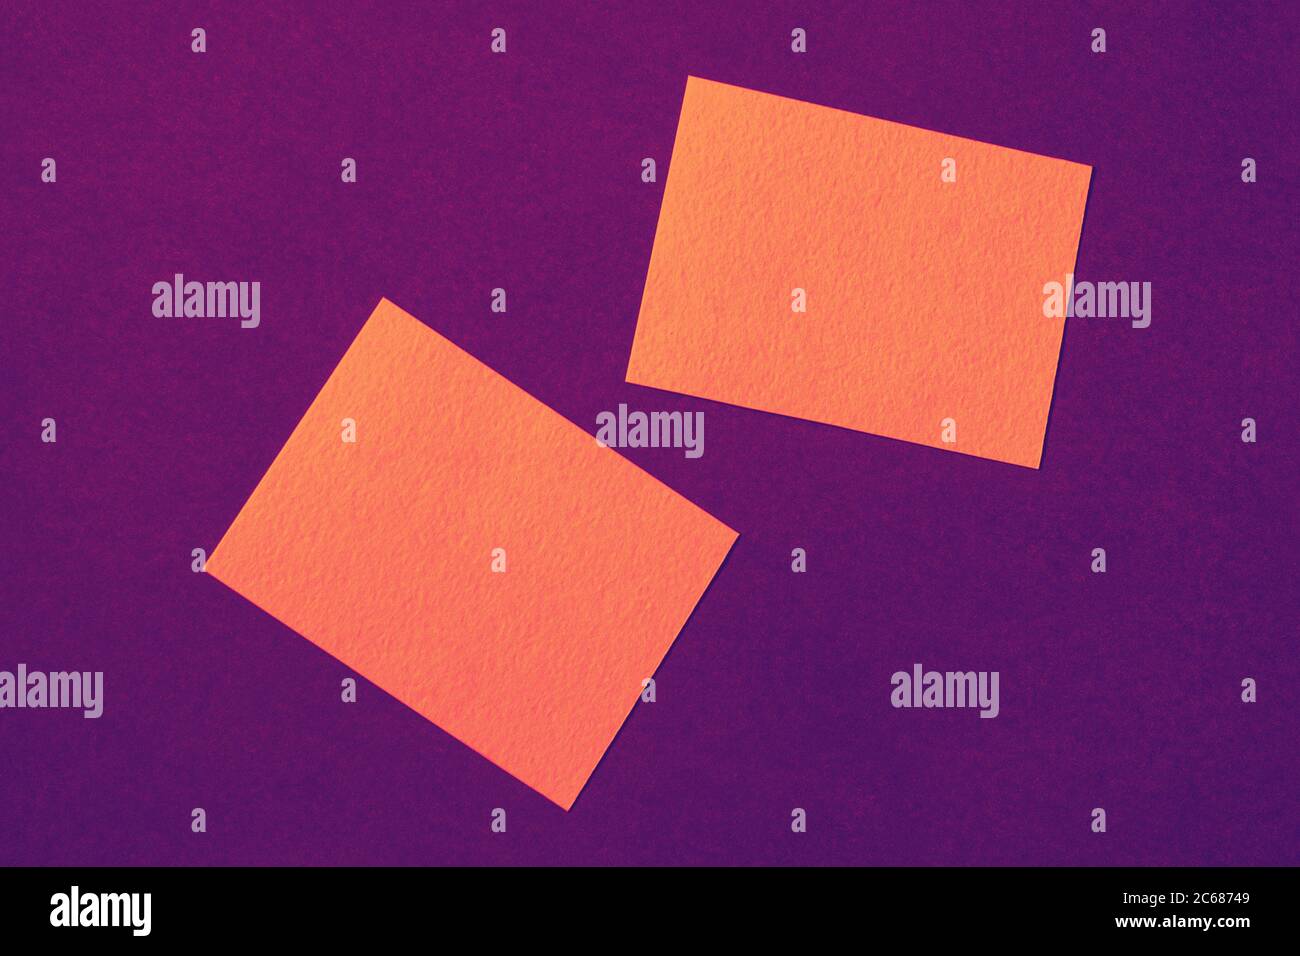 cartes en papier orange sur fond violet disposées de manière aléatoire, publicité en couleurs vives intenses et vives Banque D'Images